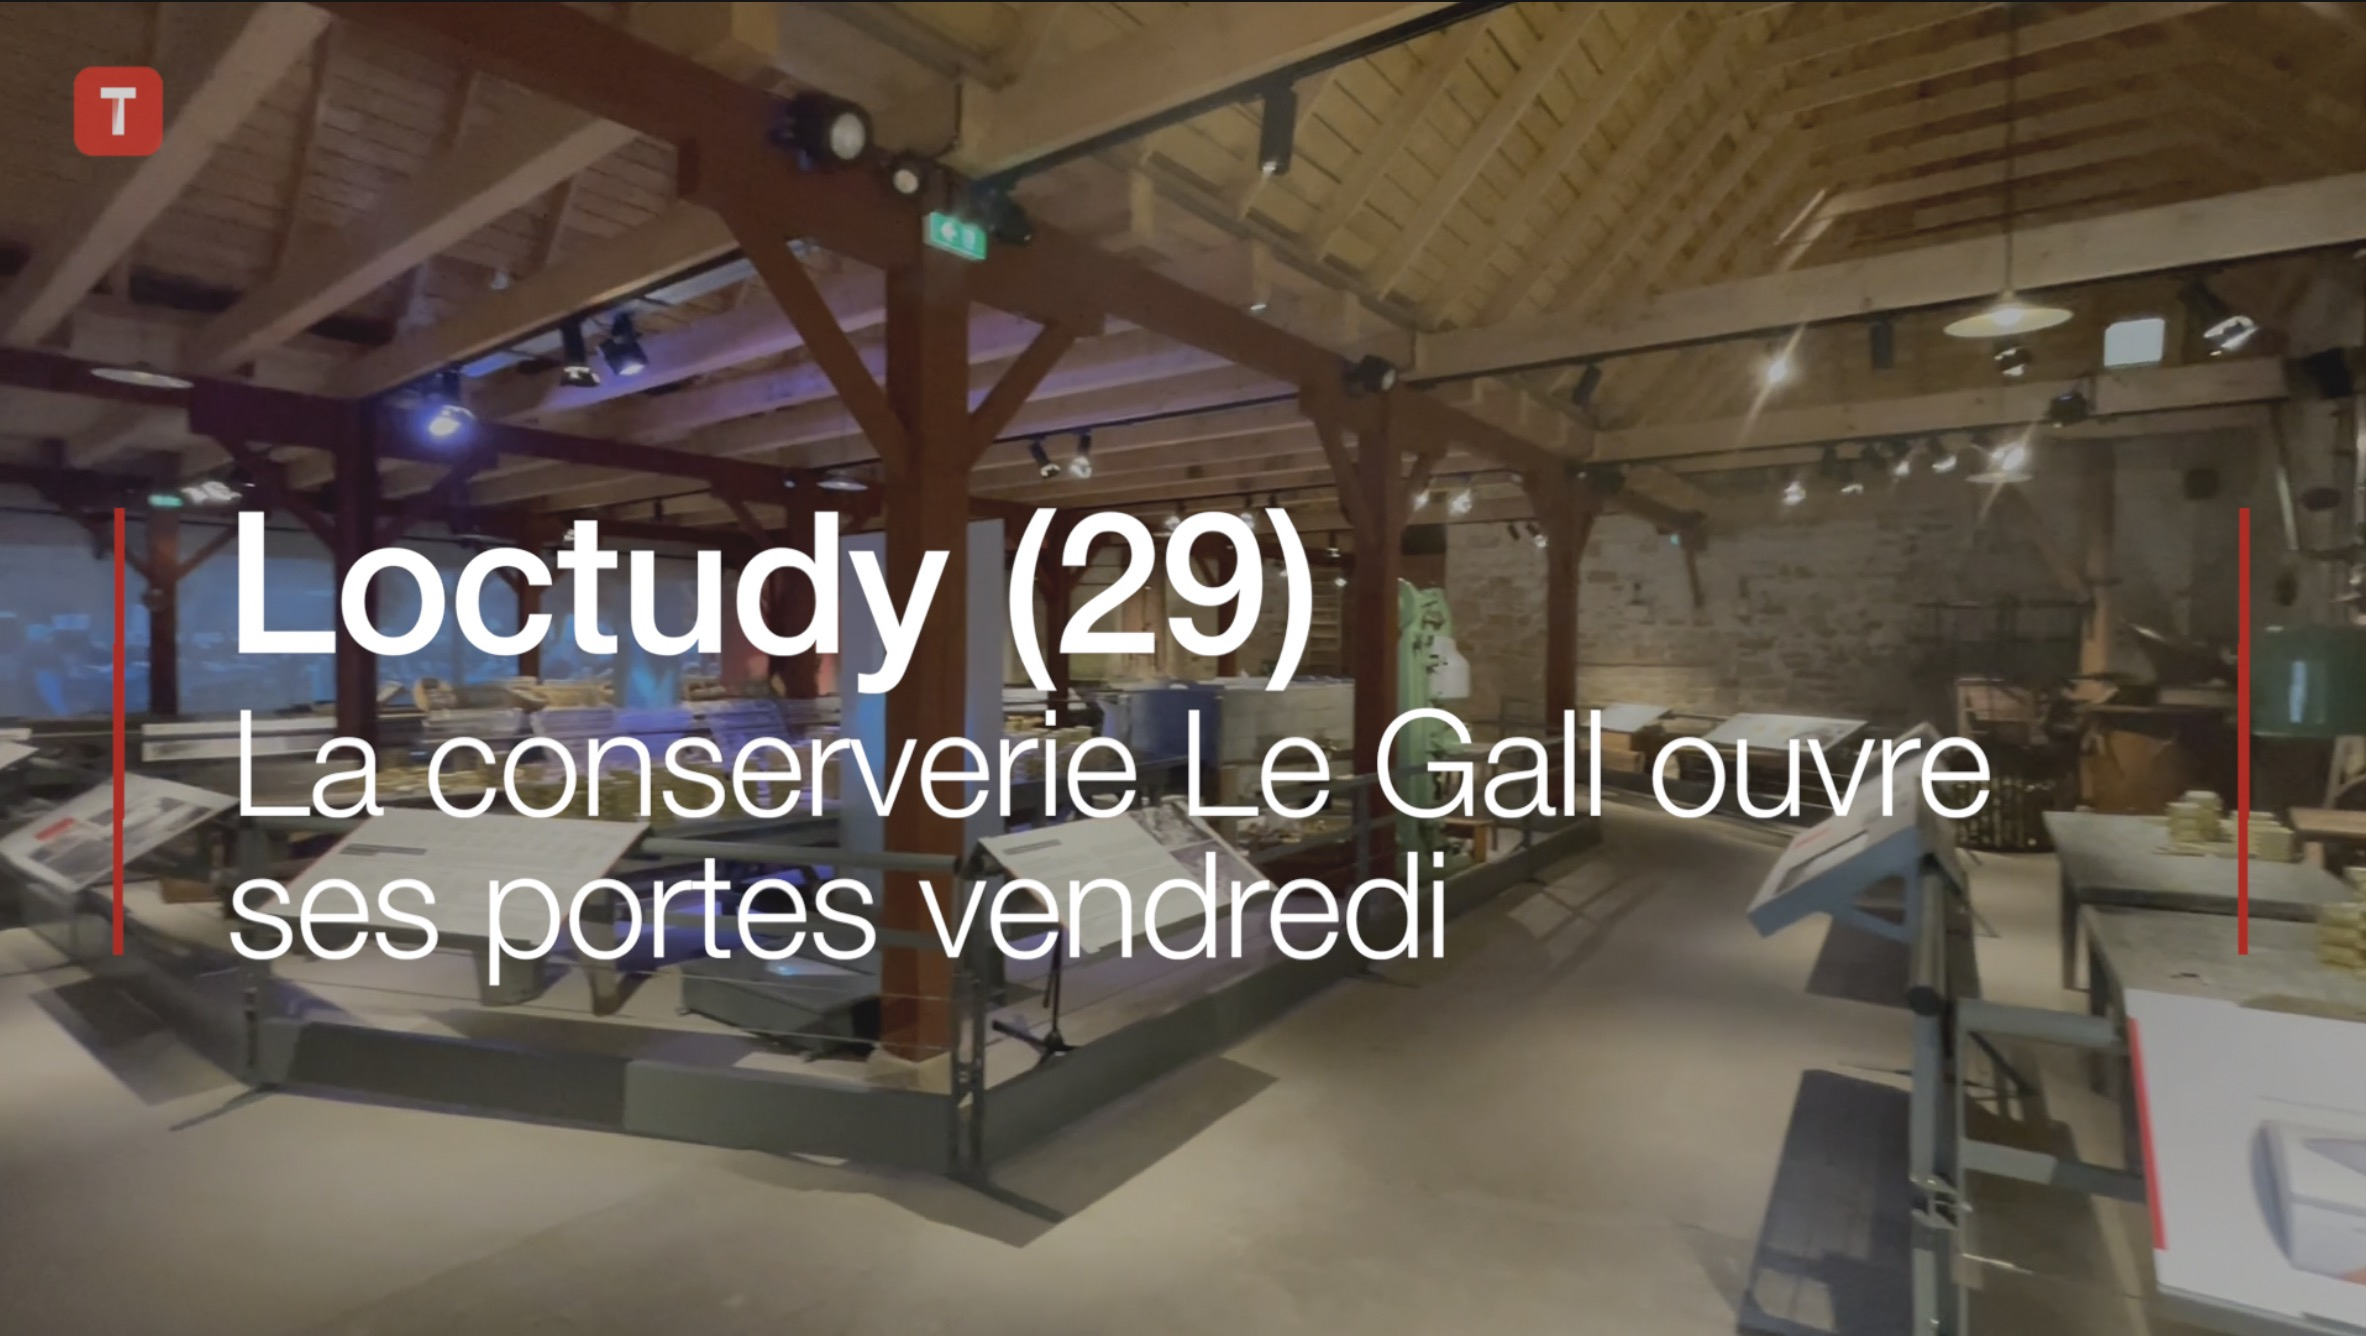 Loctudy (29). La conserverie Le Gall ouvre ses portes vendredi (Le Télégramme)